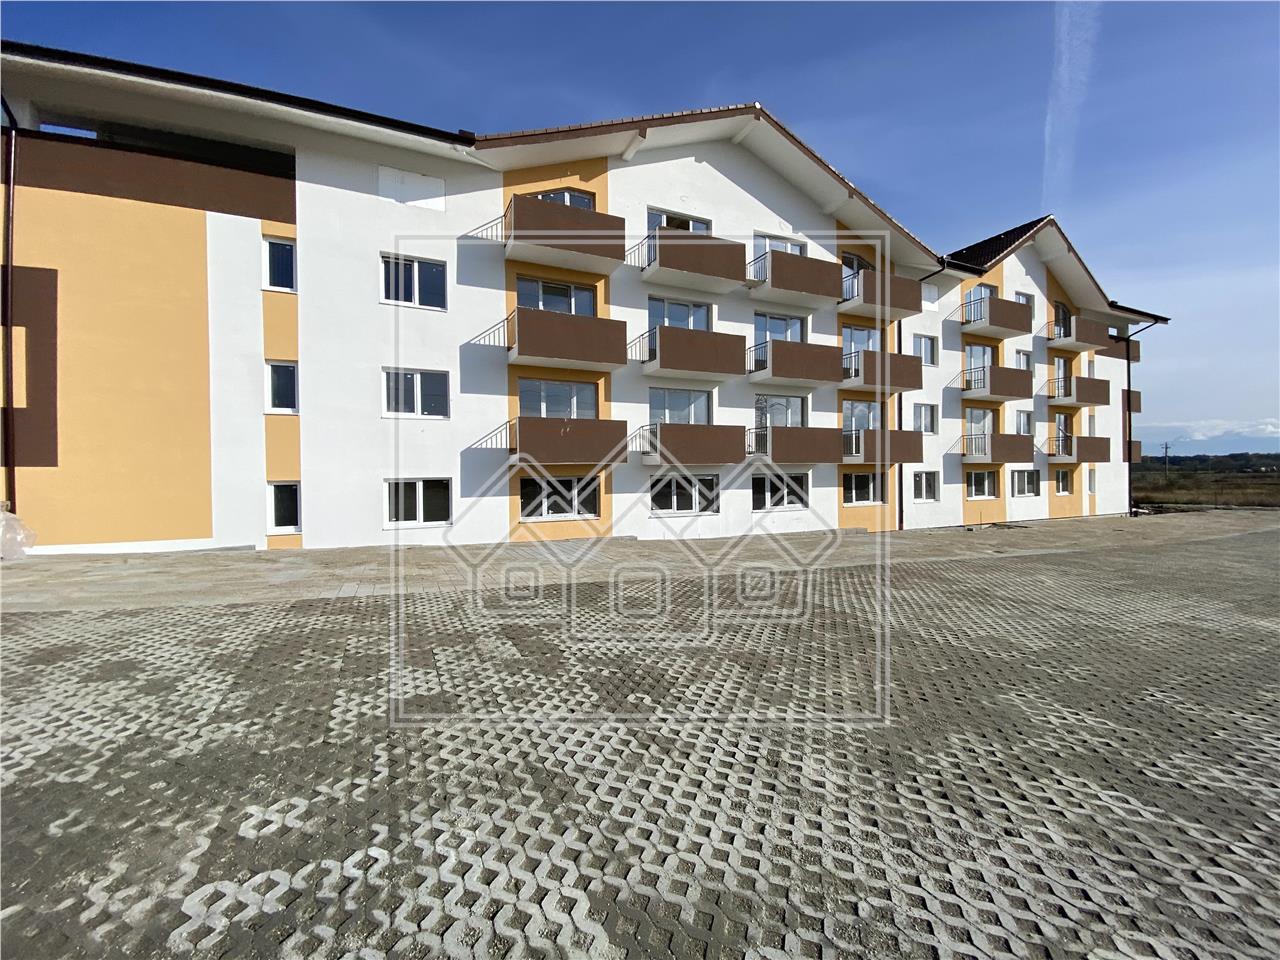 2 Zimmer Wohnung zu verkaufen in Sibiu - Neubau und Denkmalschutz